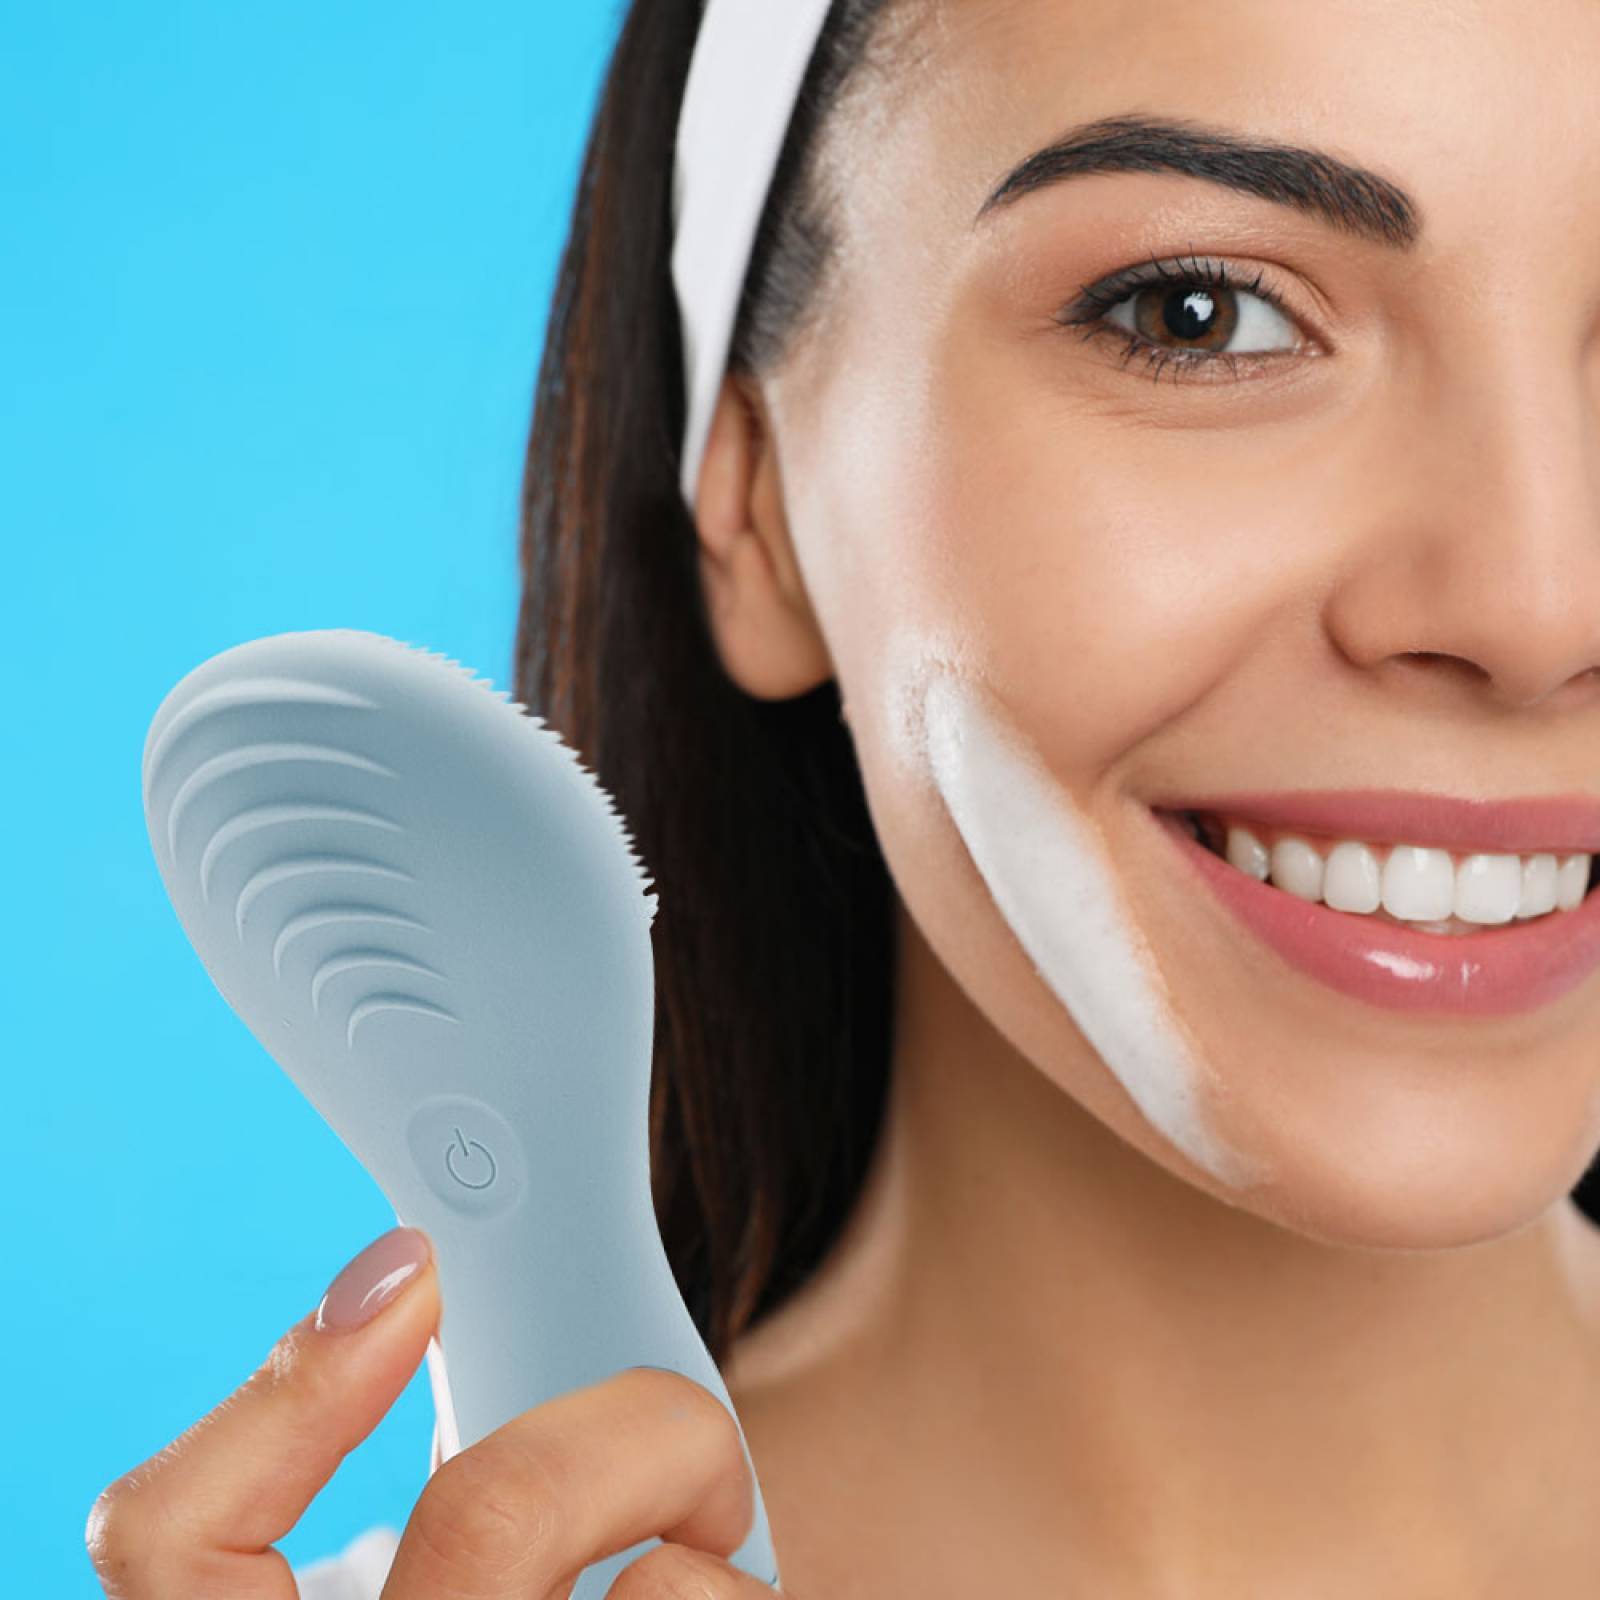 Miniso Cepillo Limpiador Facial Eléctrico Impermeable Protección IPX6 Azul